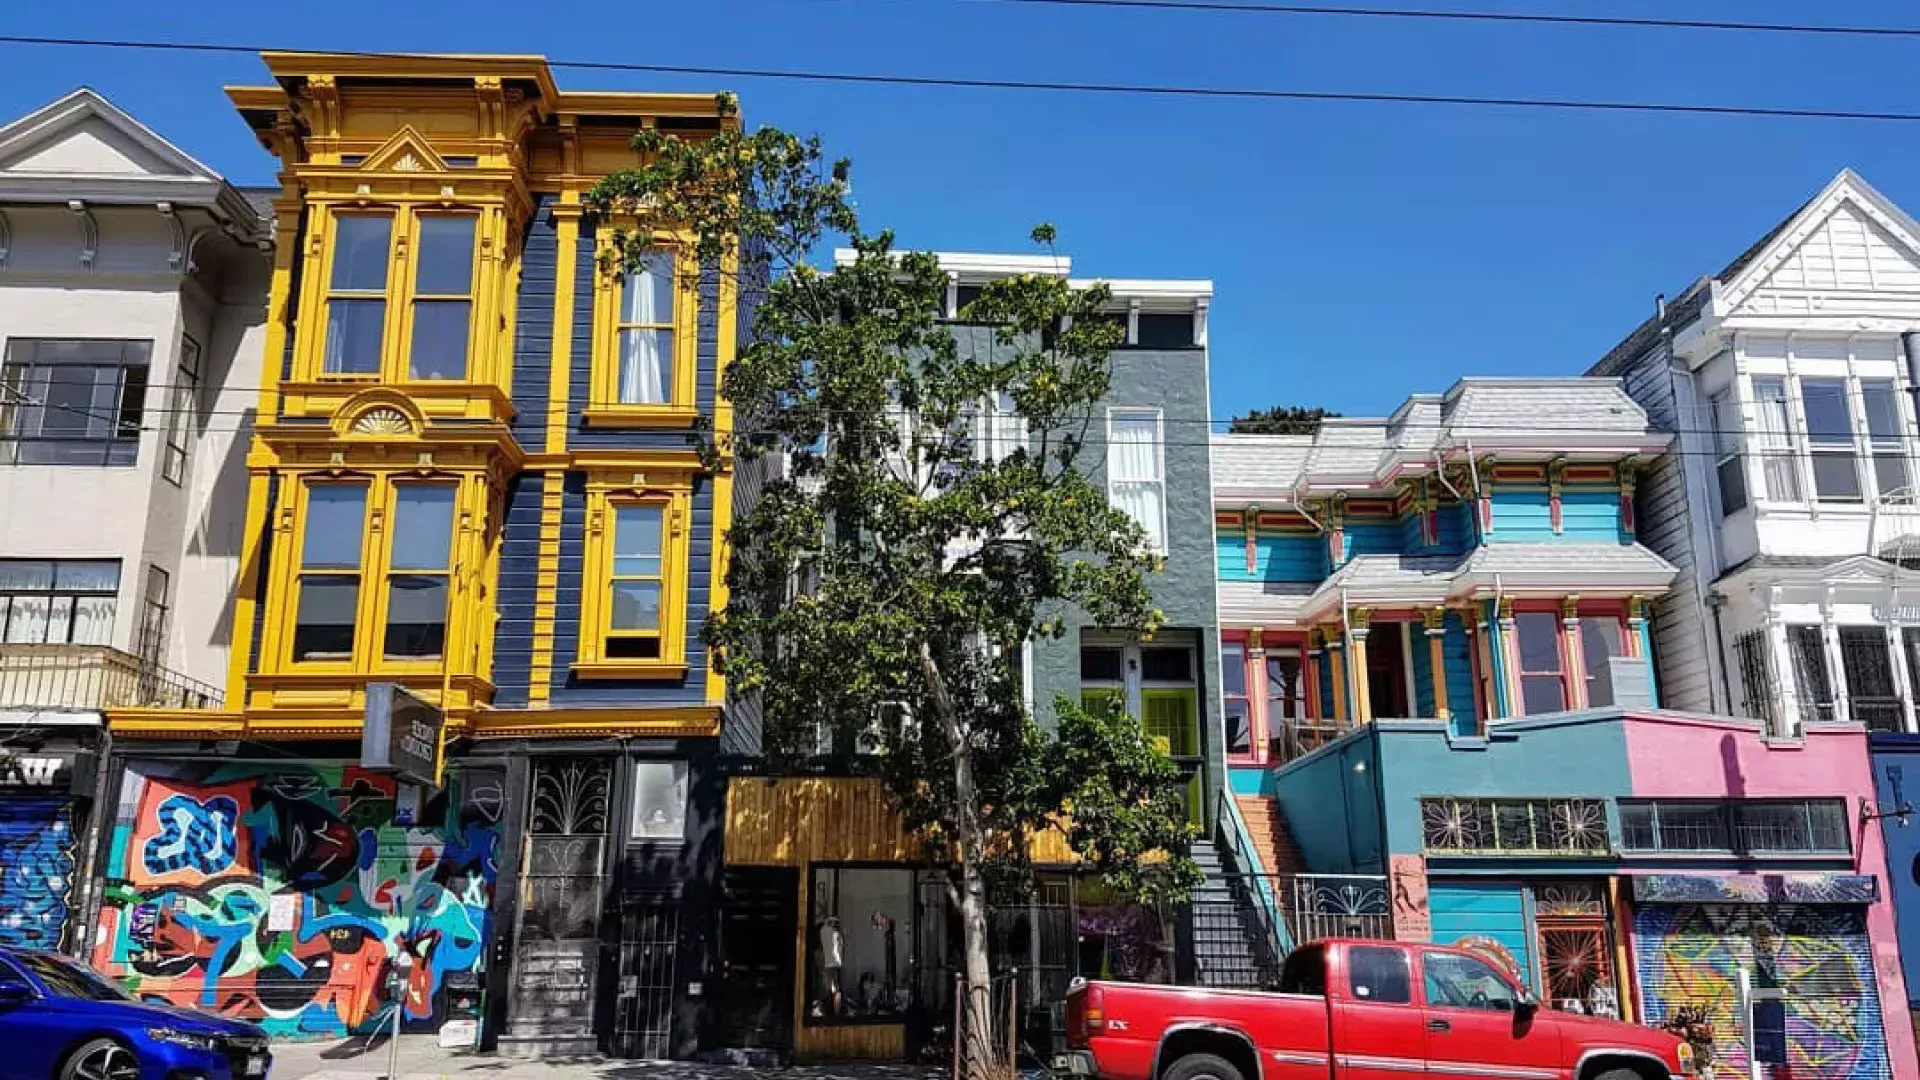 Vue sur les bâtiments colorés de Haight Street avec des voitures garées le long de la rue. San Francisco, Californie.